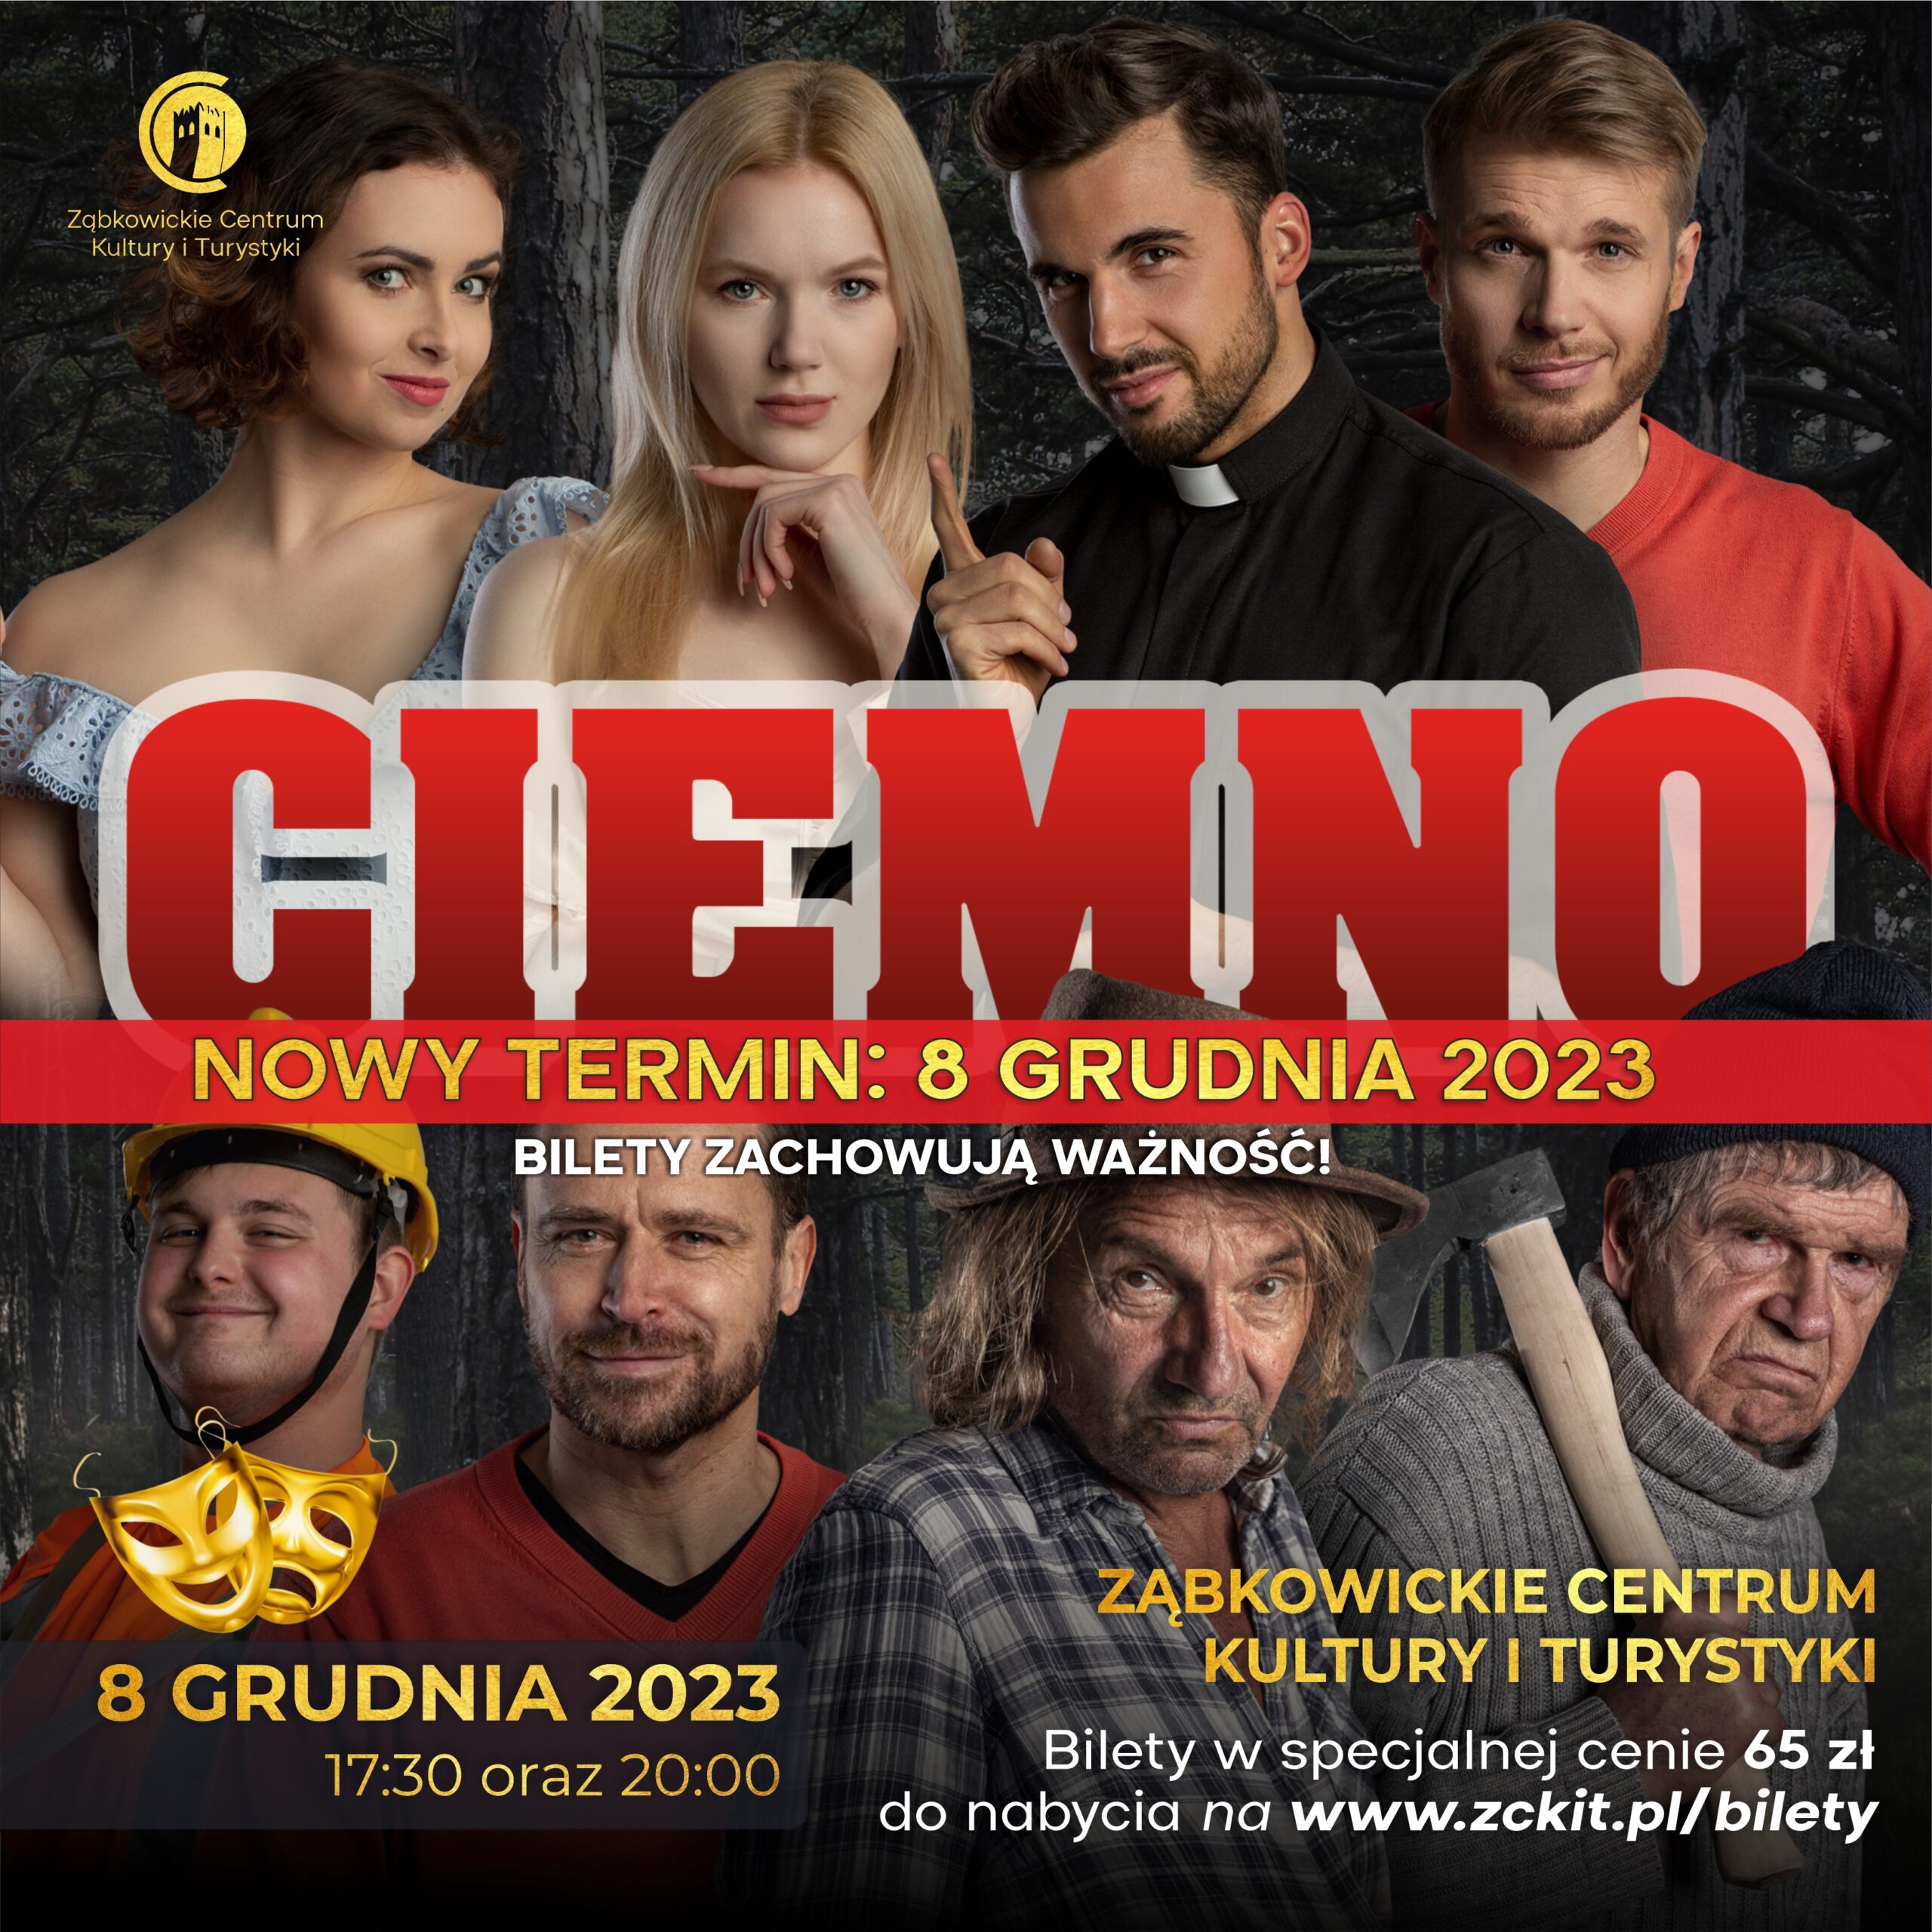 Plakat informujący o spektaklu "Ciemno" 8 grudnia 2023 o 17:30 oraz 20:00 w Ząbkowickim Centrum Kultury i Turystyki.